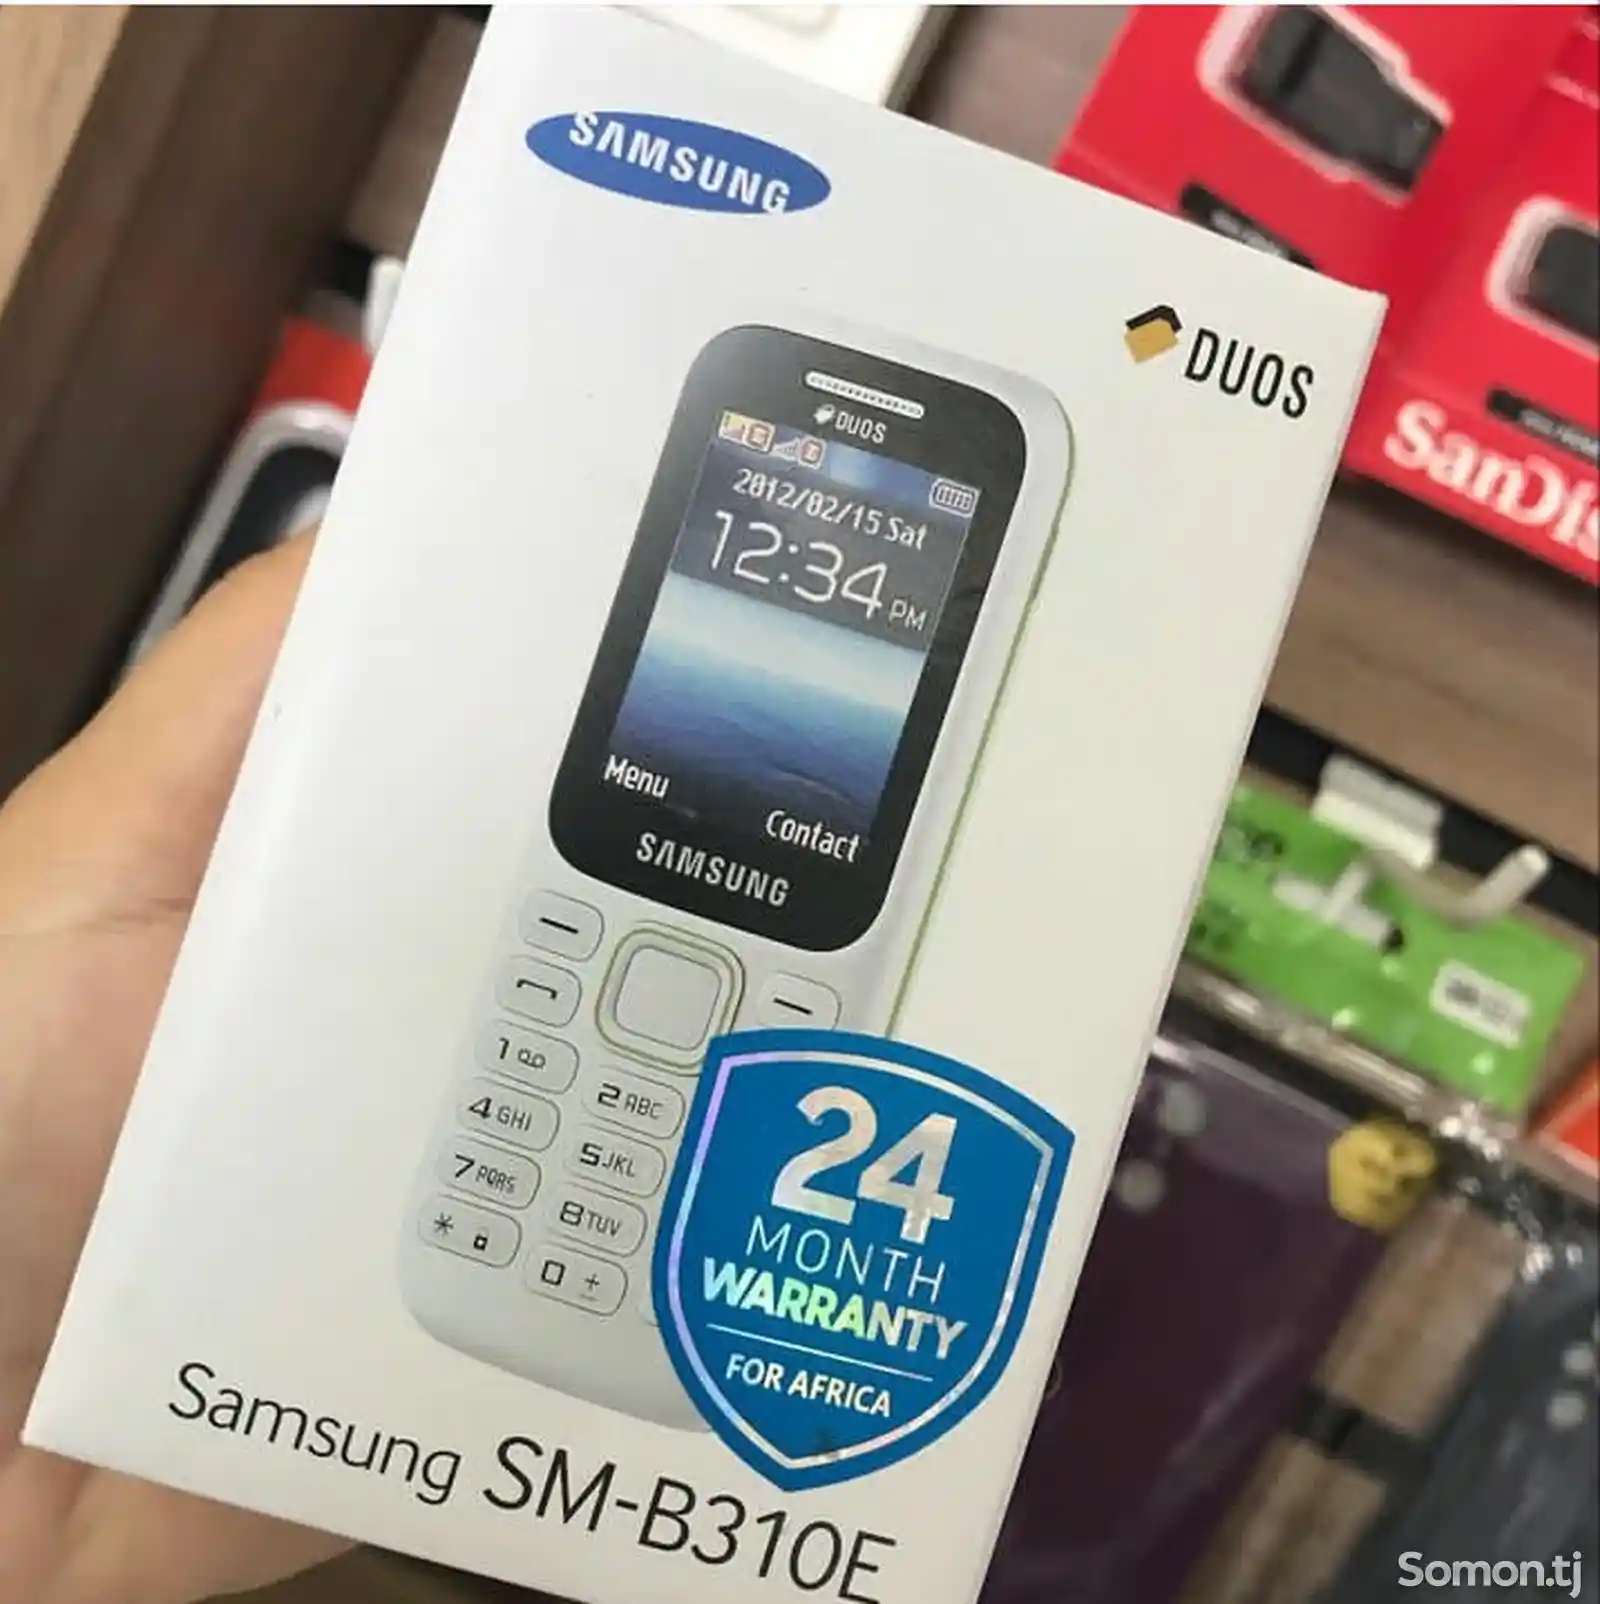 Samsung B310E Duos-3